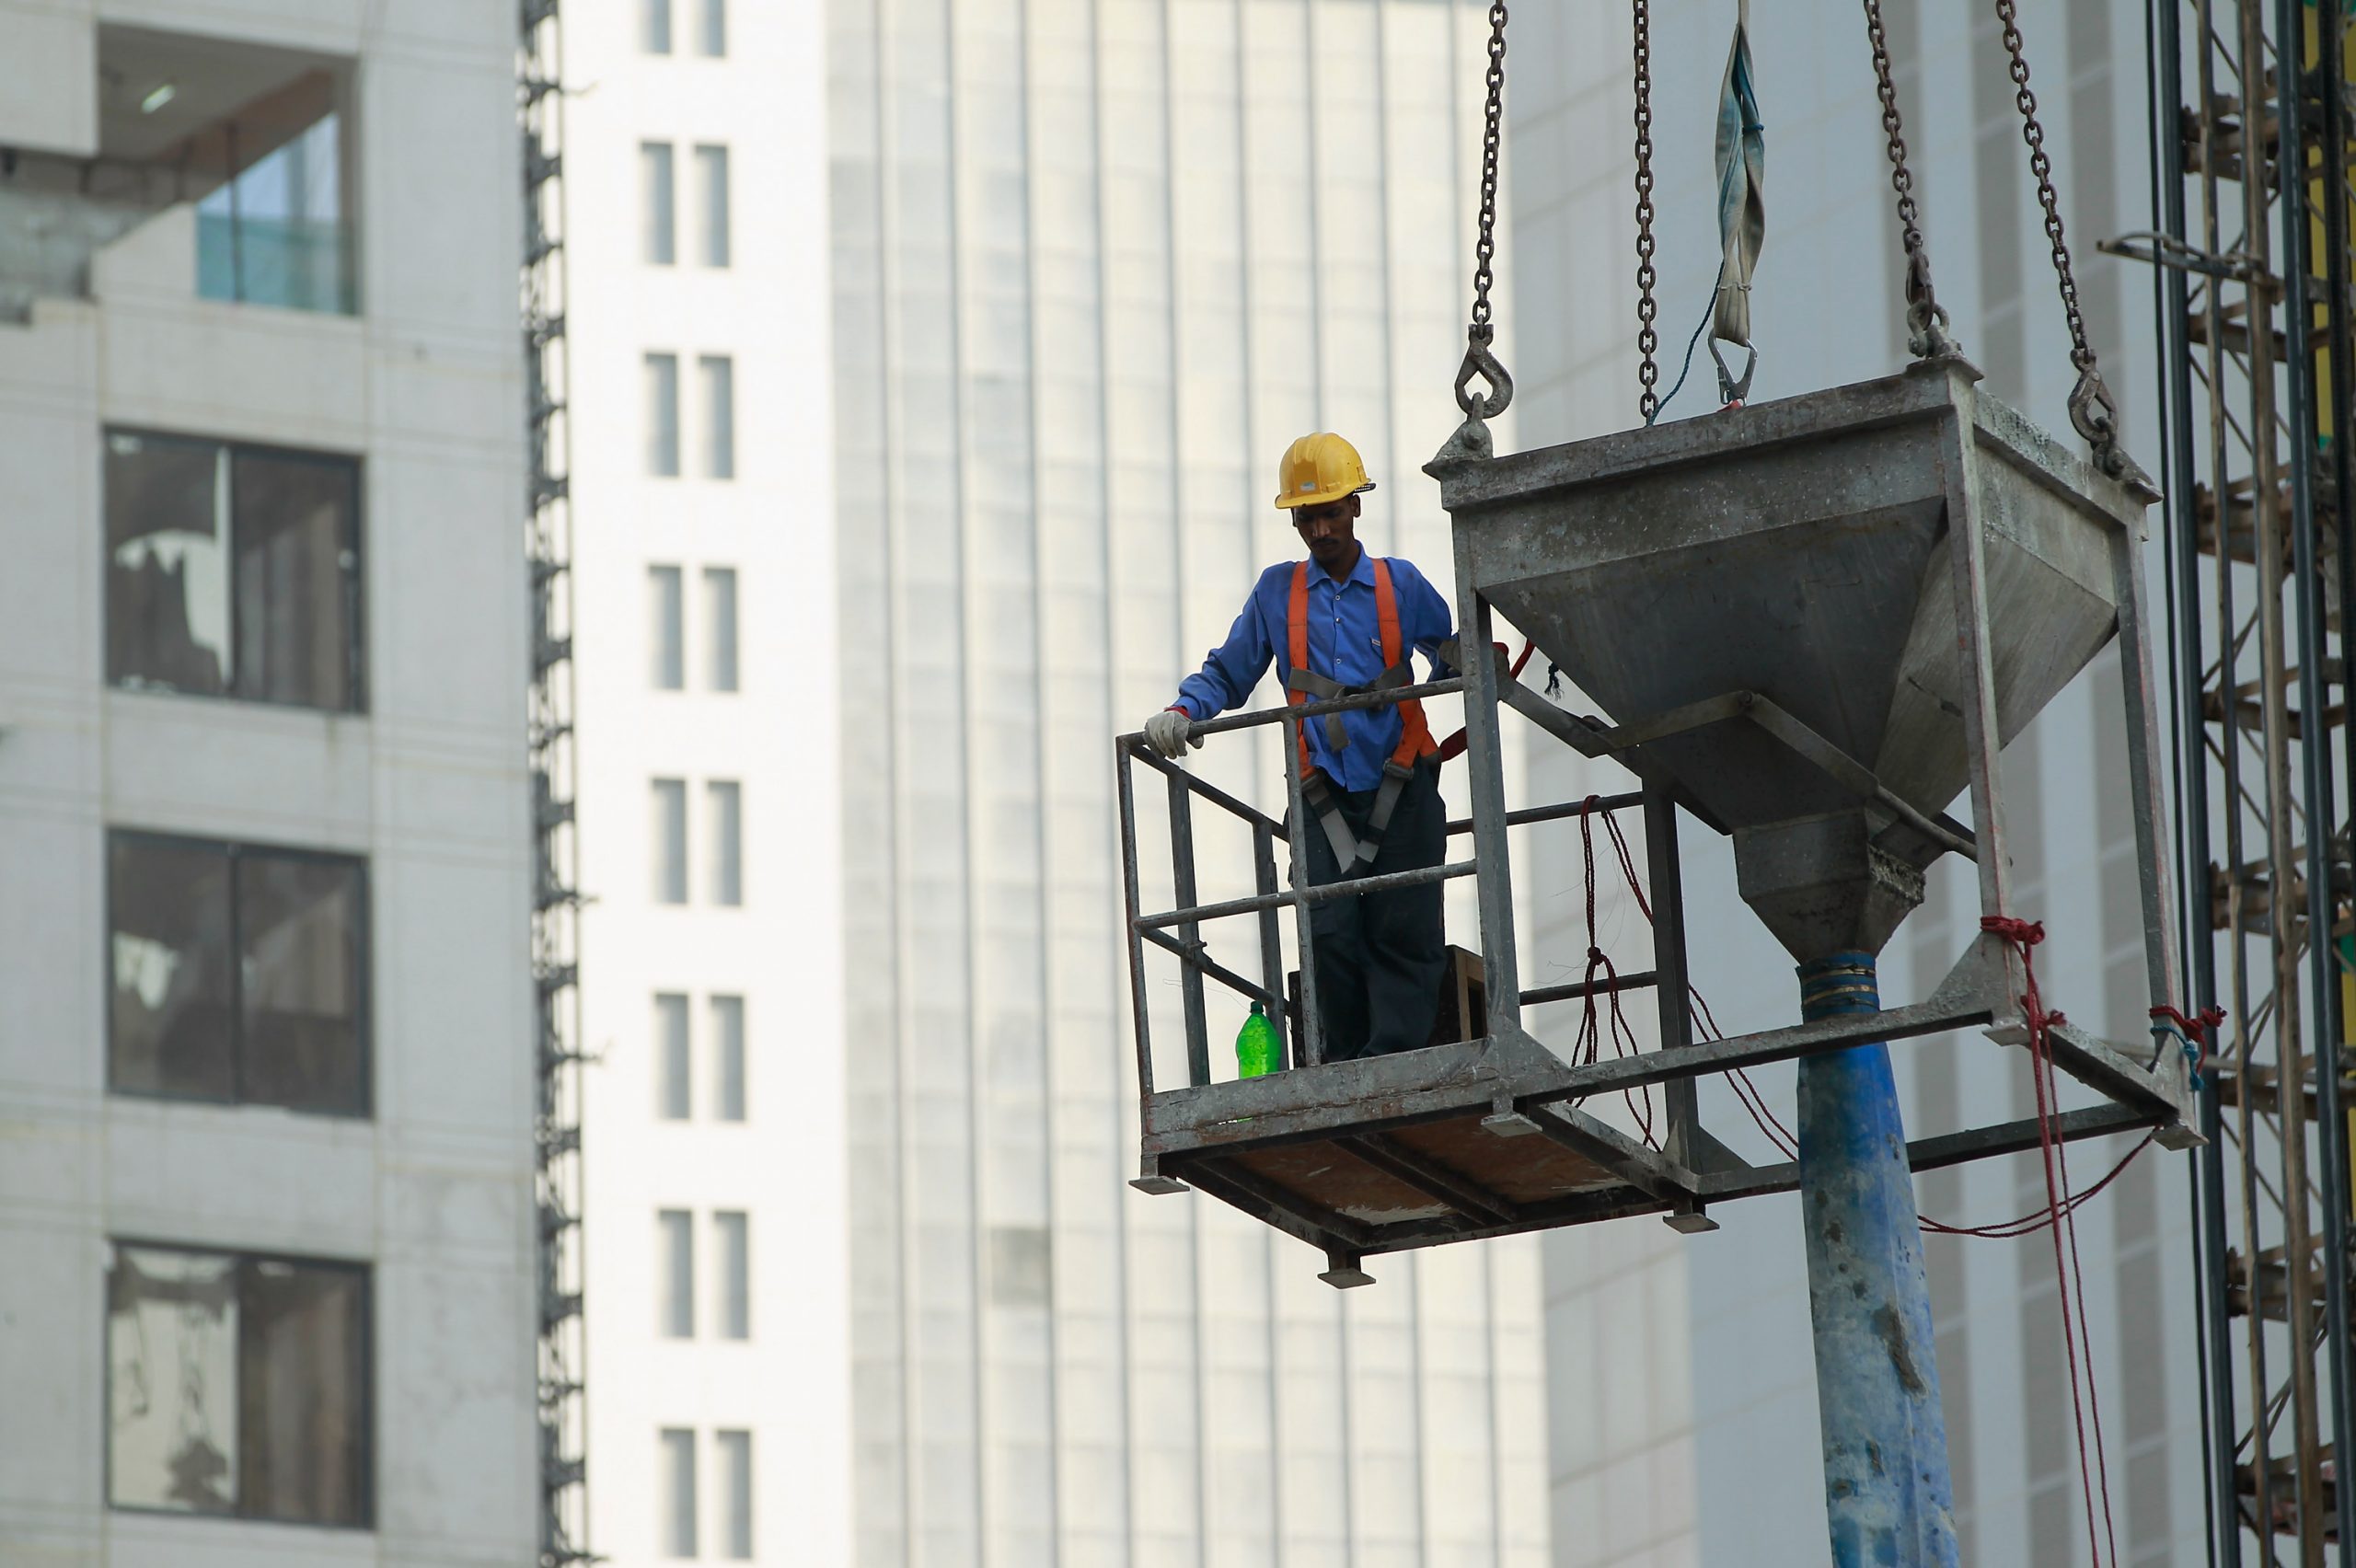 قطر تضع خططا استراتيجية لاحتياجات القوى العاملة وتوطينها